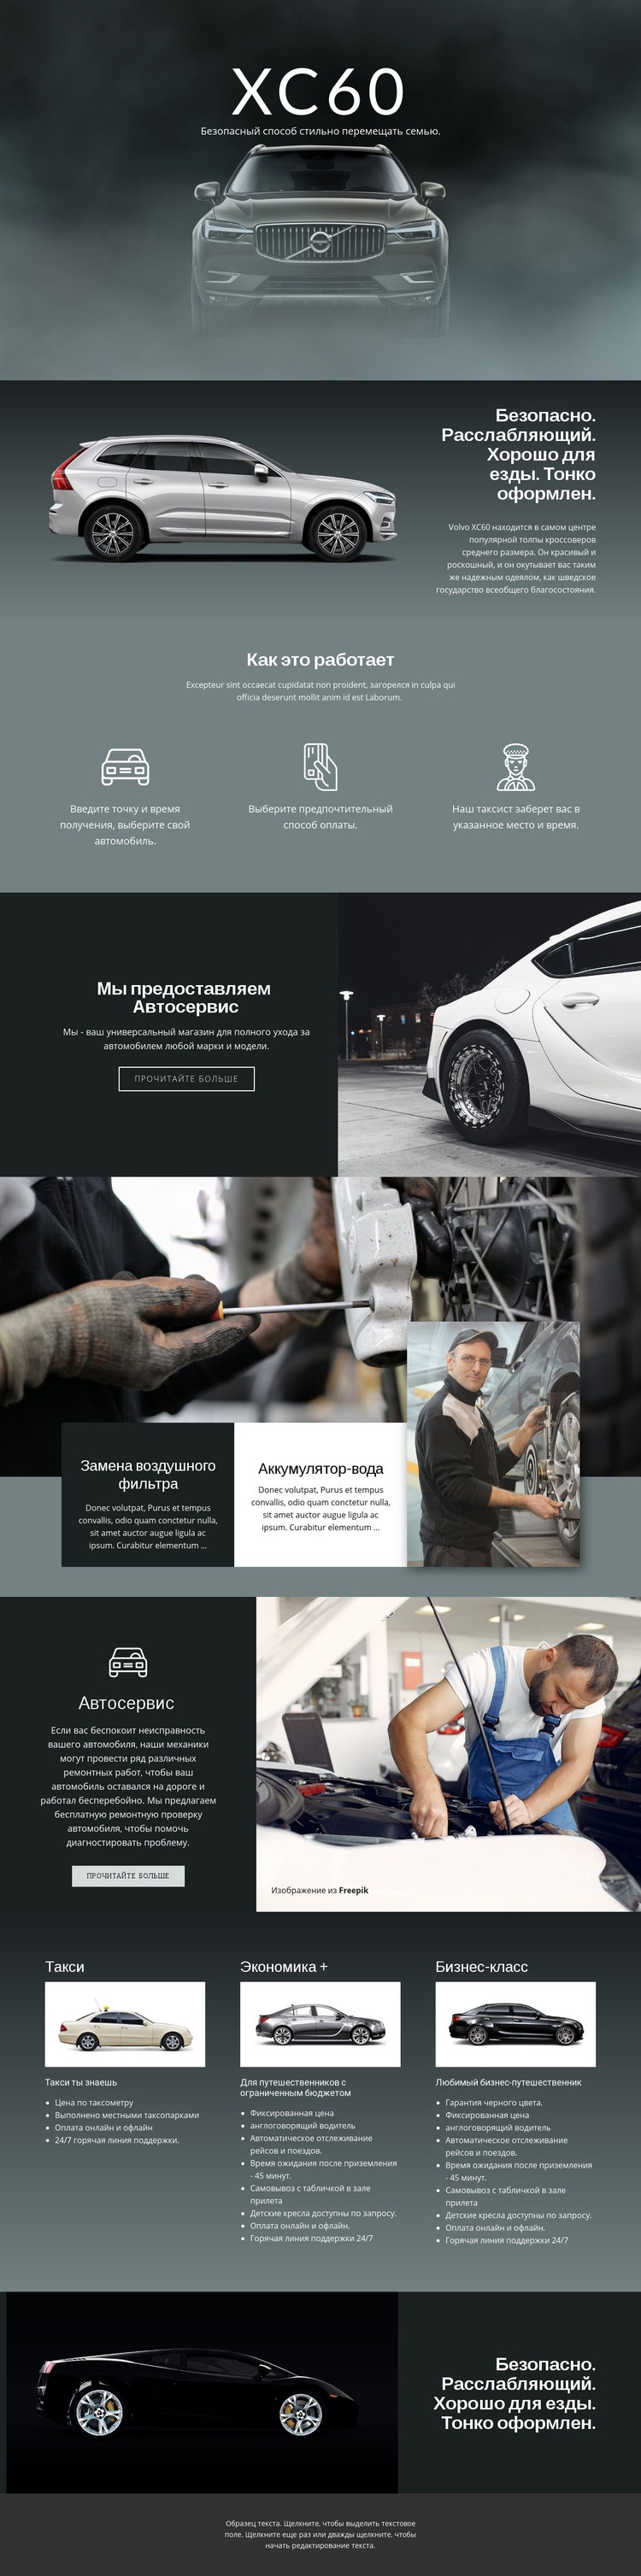 Volvo XC60 внедорожник HTML шаблон